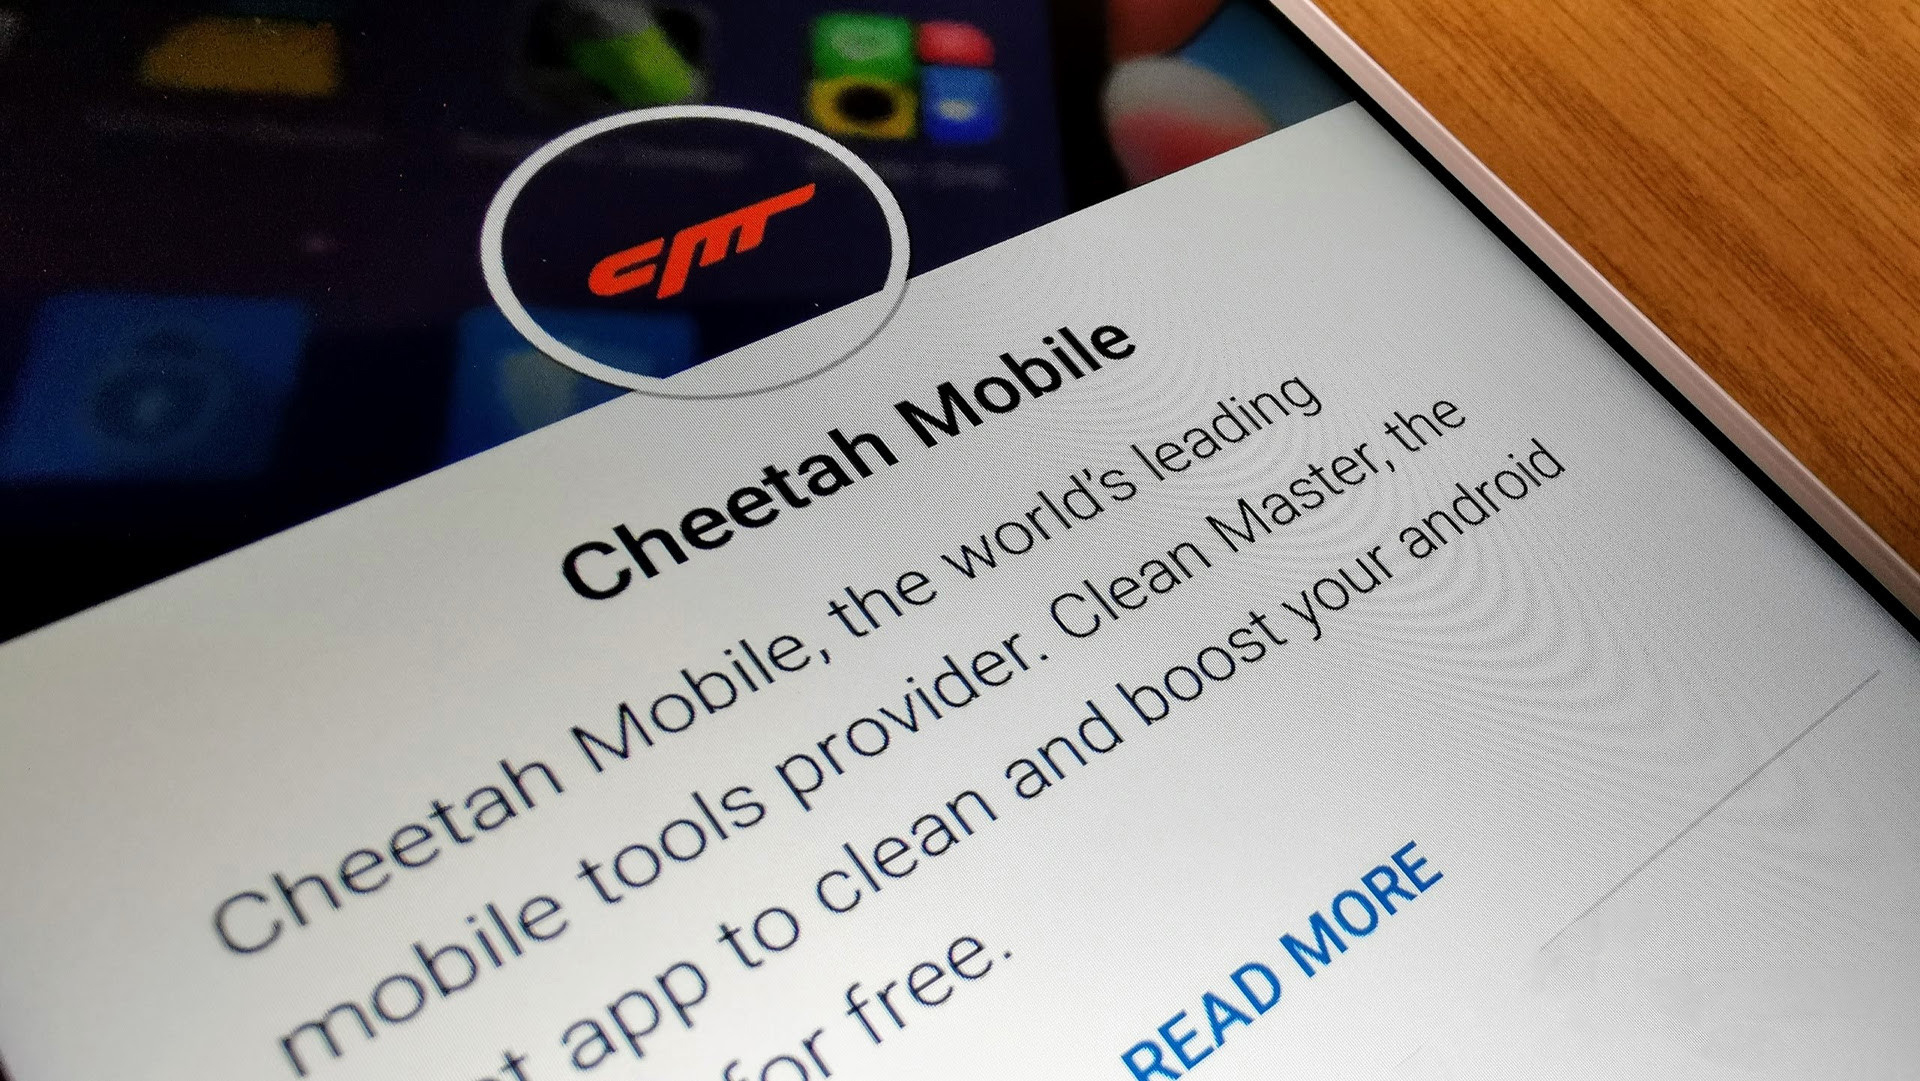 جوجل تزيل معظم تطبيقات Cheetah Mobile من متجر جوجل بلاي - عالم التقنية